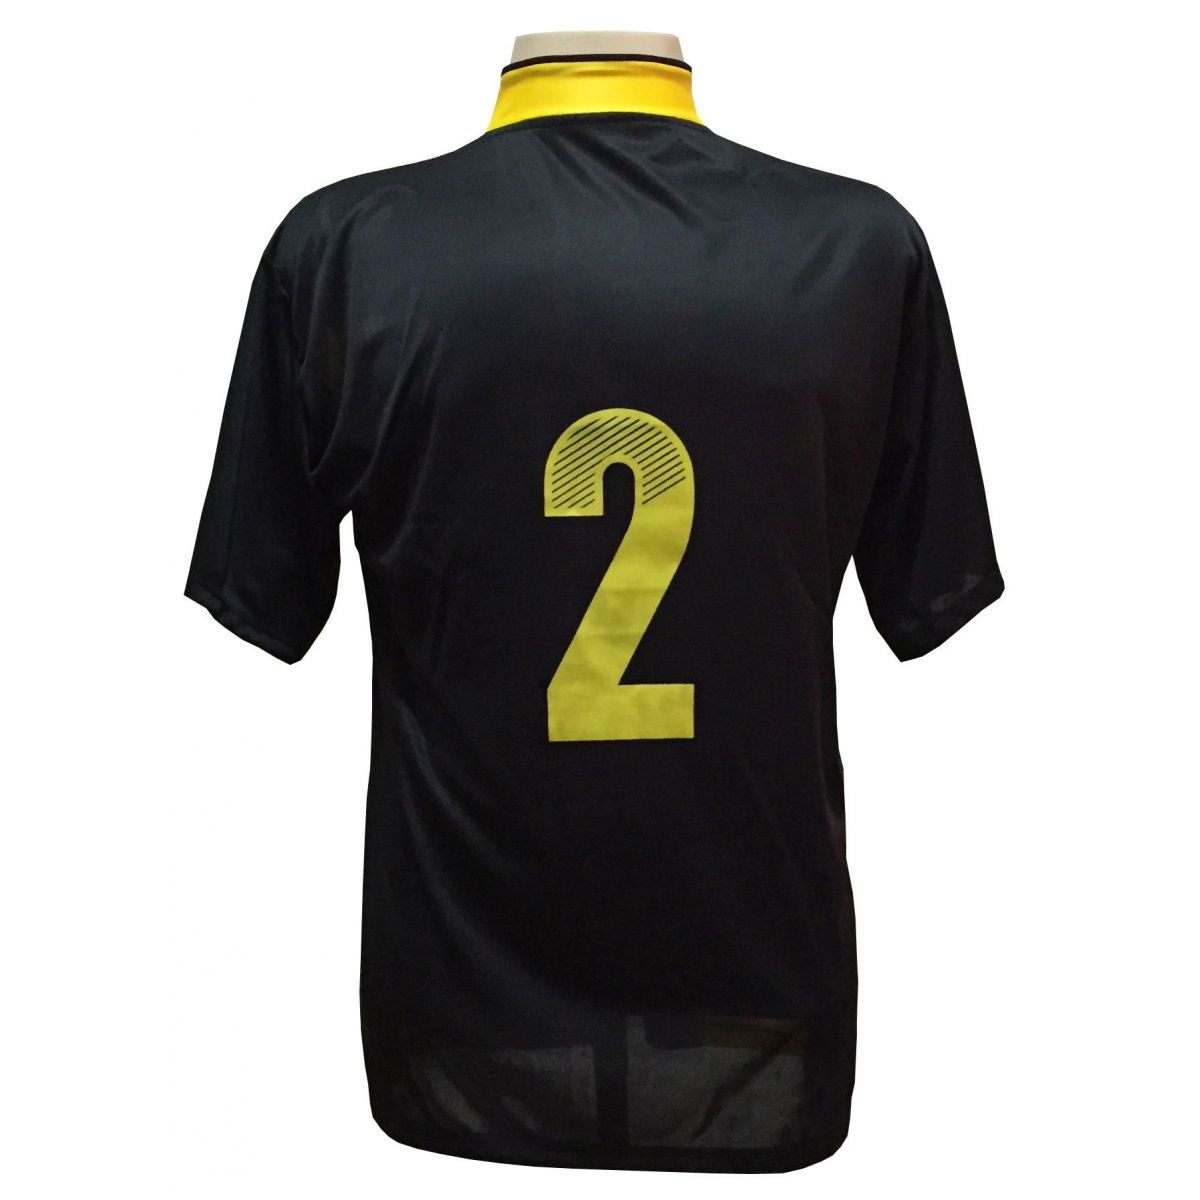 Uniforme Esportivo com 14 camisas modelo Suécia Preto/Amarelo + 14 calções modelo Madrid + 1 Goleiro + Brindes